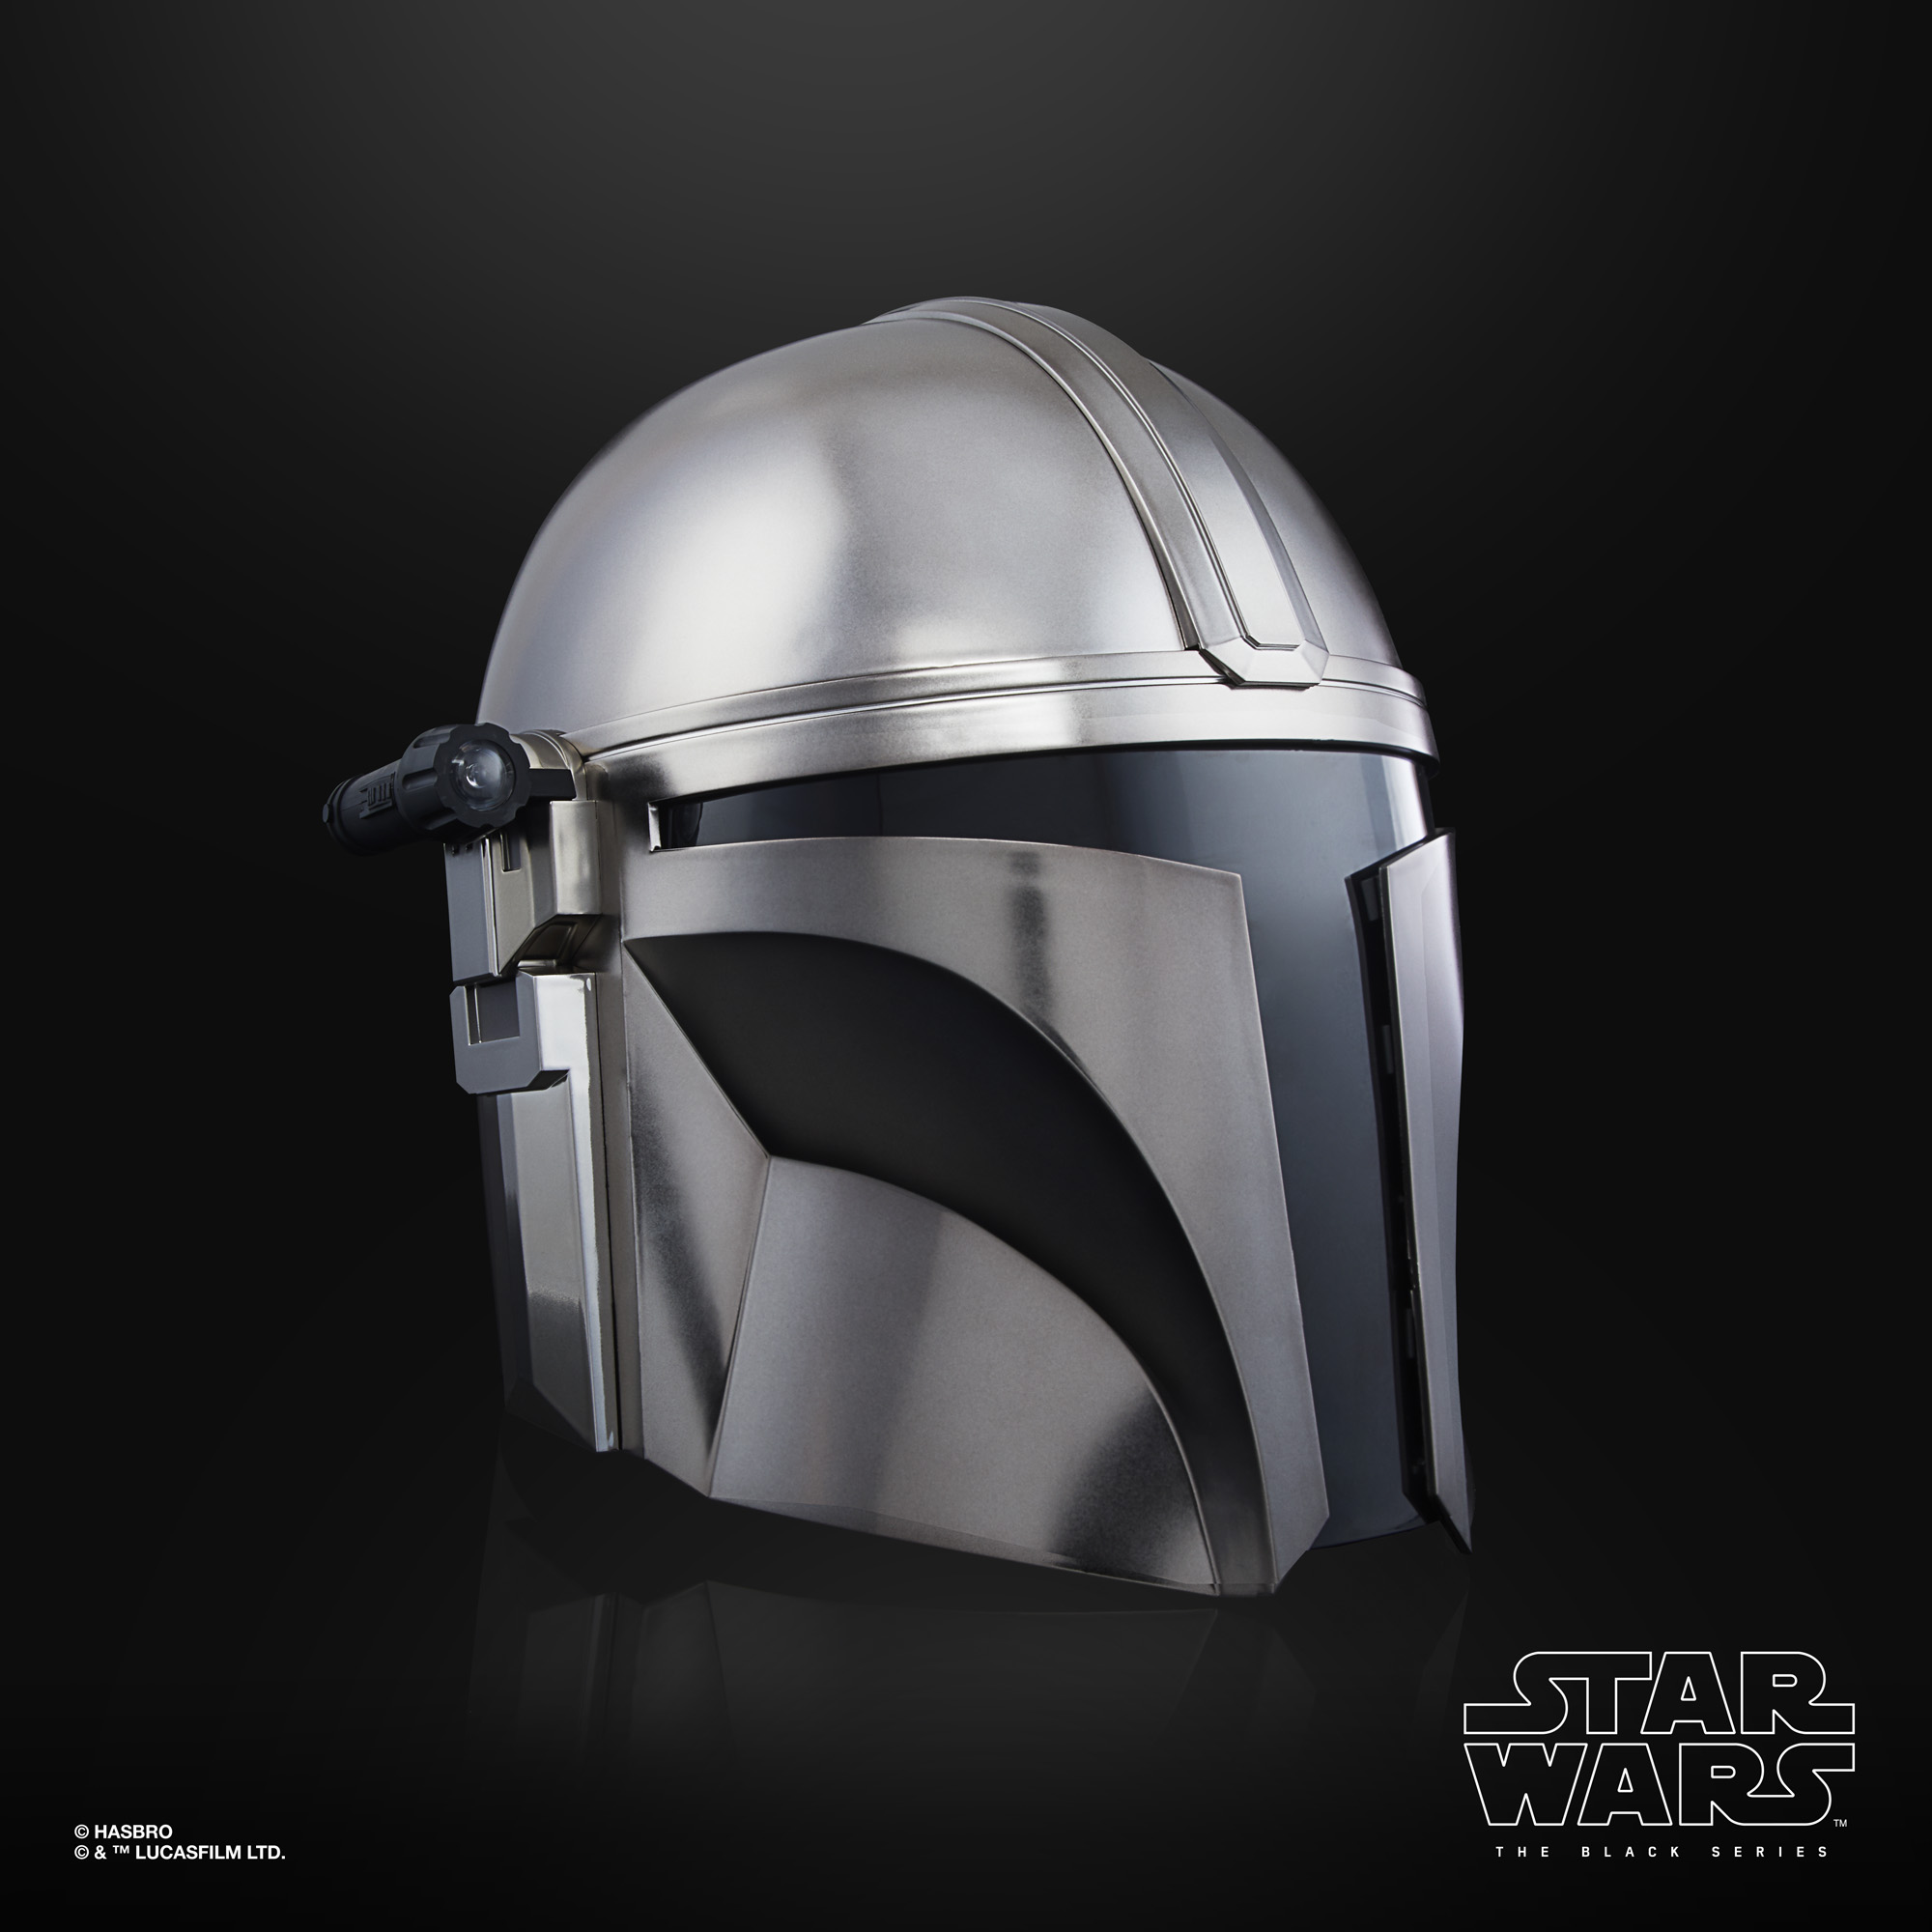 Star Wars The Black Series The Mandalorian Helmet F04935L0 5010993800933